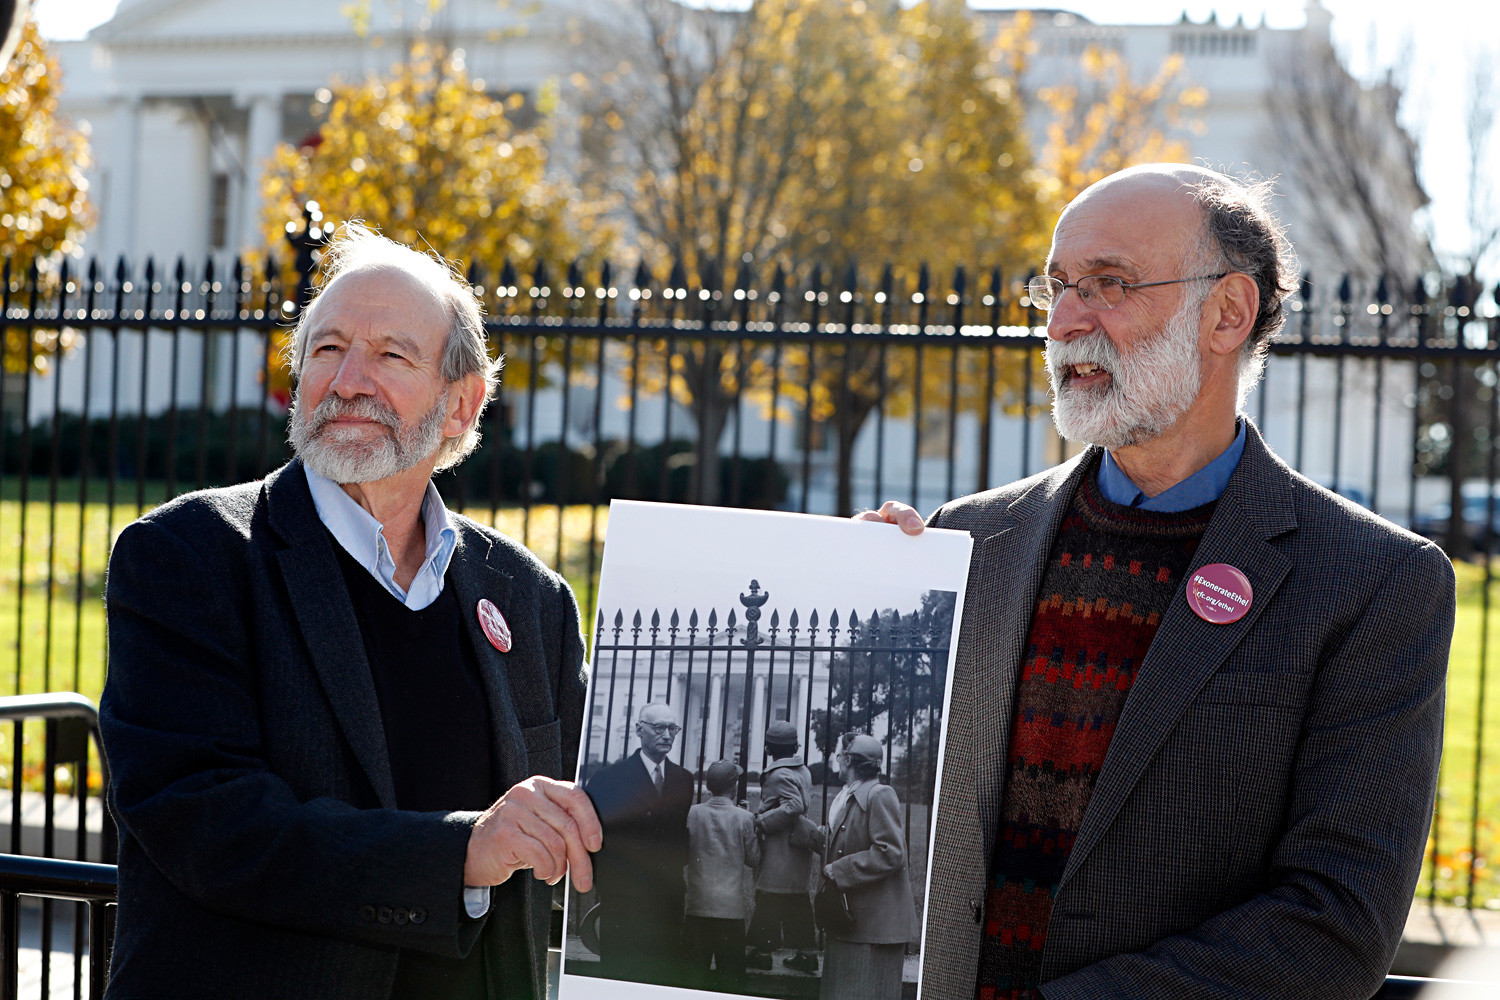 Michael Meeropol et son frère Robert Meeropol aux abords de la Maison Blanche lors d'un rassemblement, le 1er décembre 2016, pour réhabiliter le nom de leur mère, Ethel Rosenberg.